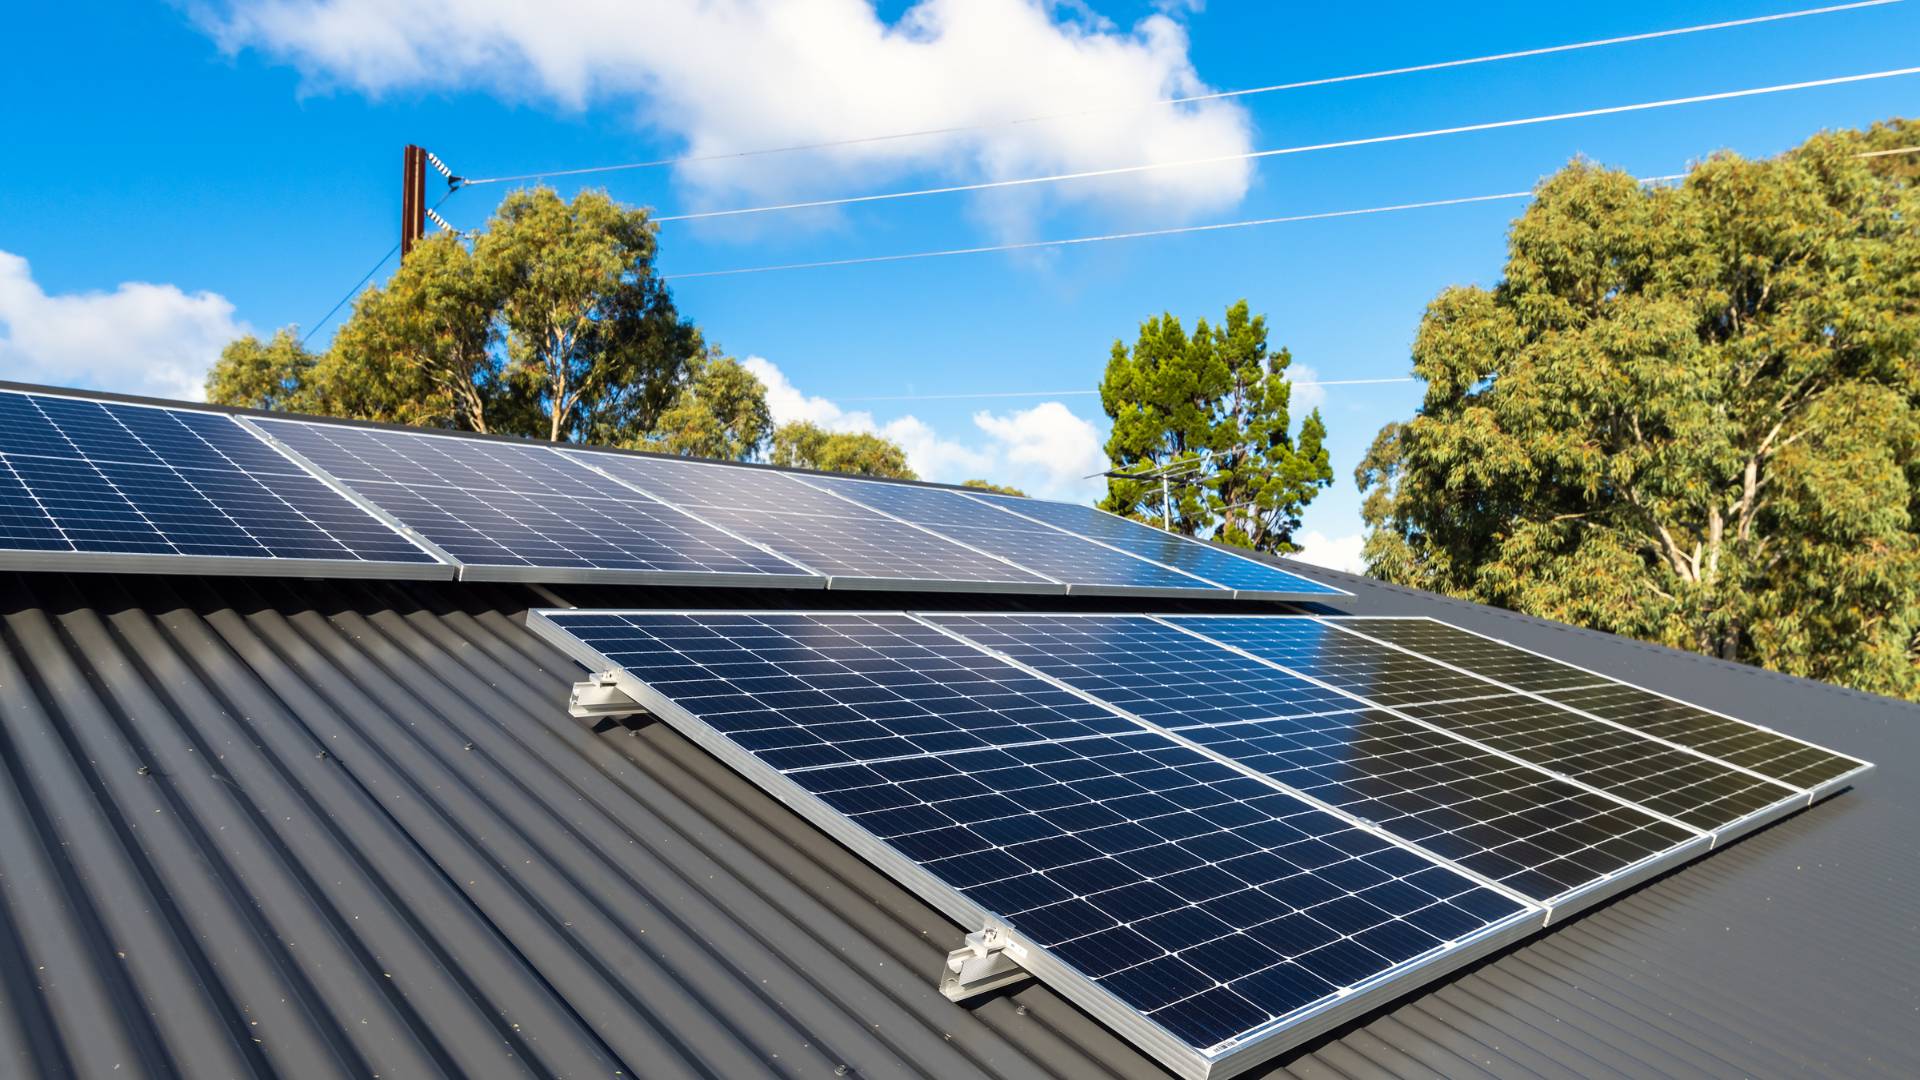 Installation de panneaux solaires durables par HOMZA sur un toit en pente à Arras, maximisant l'autoconsommation énergétique